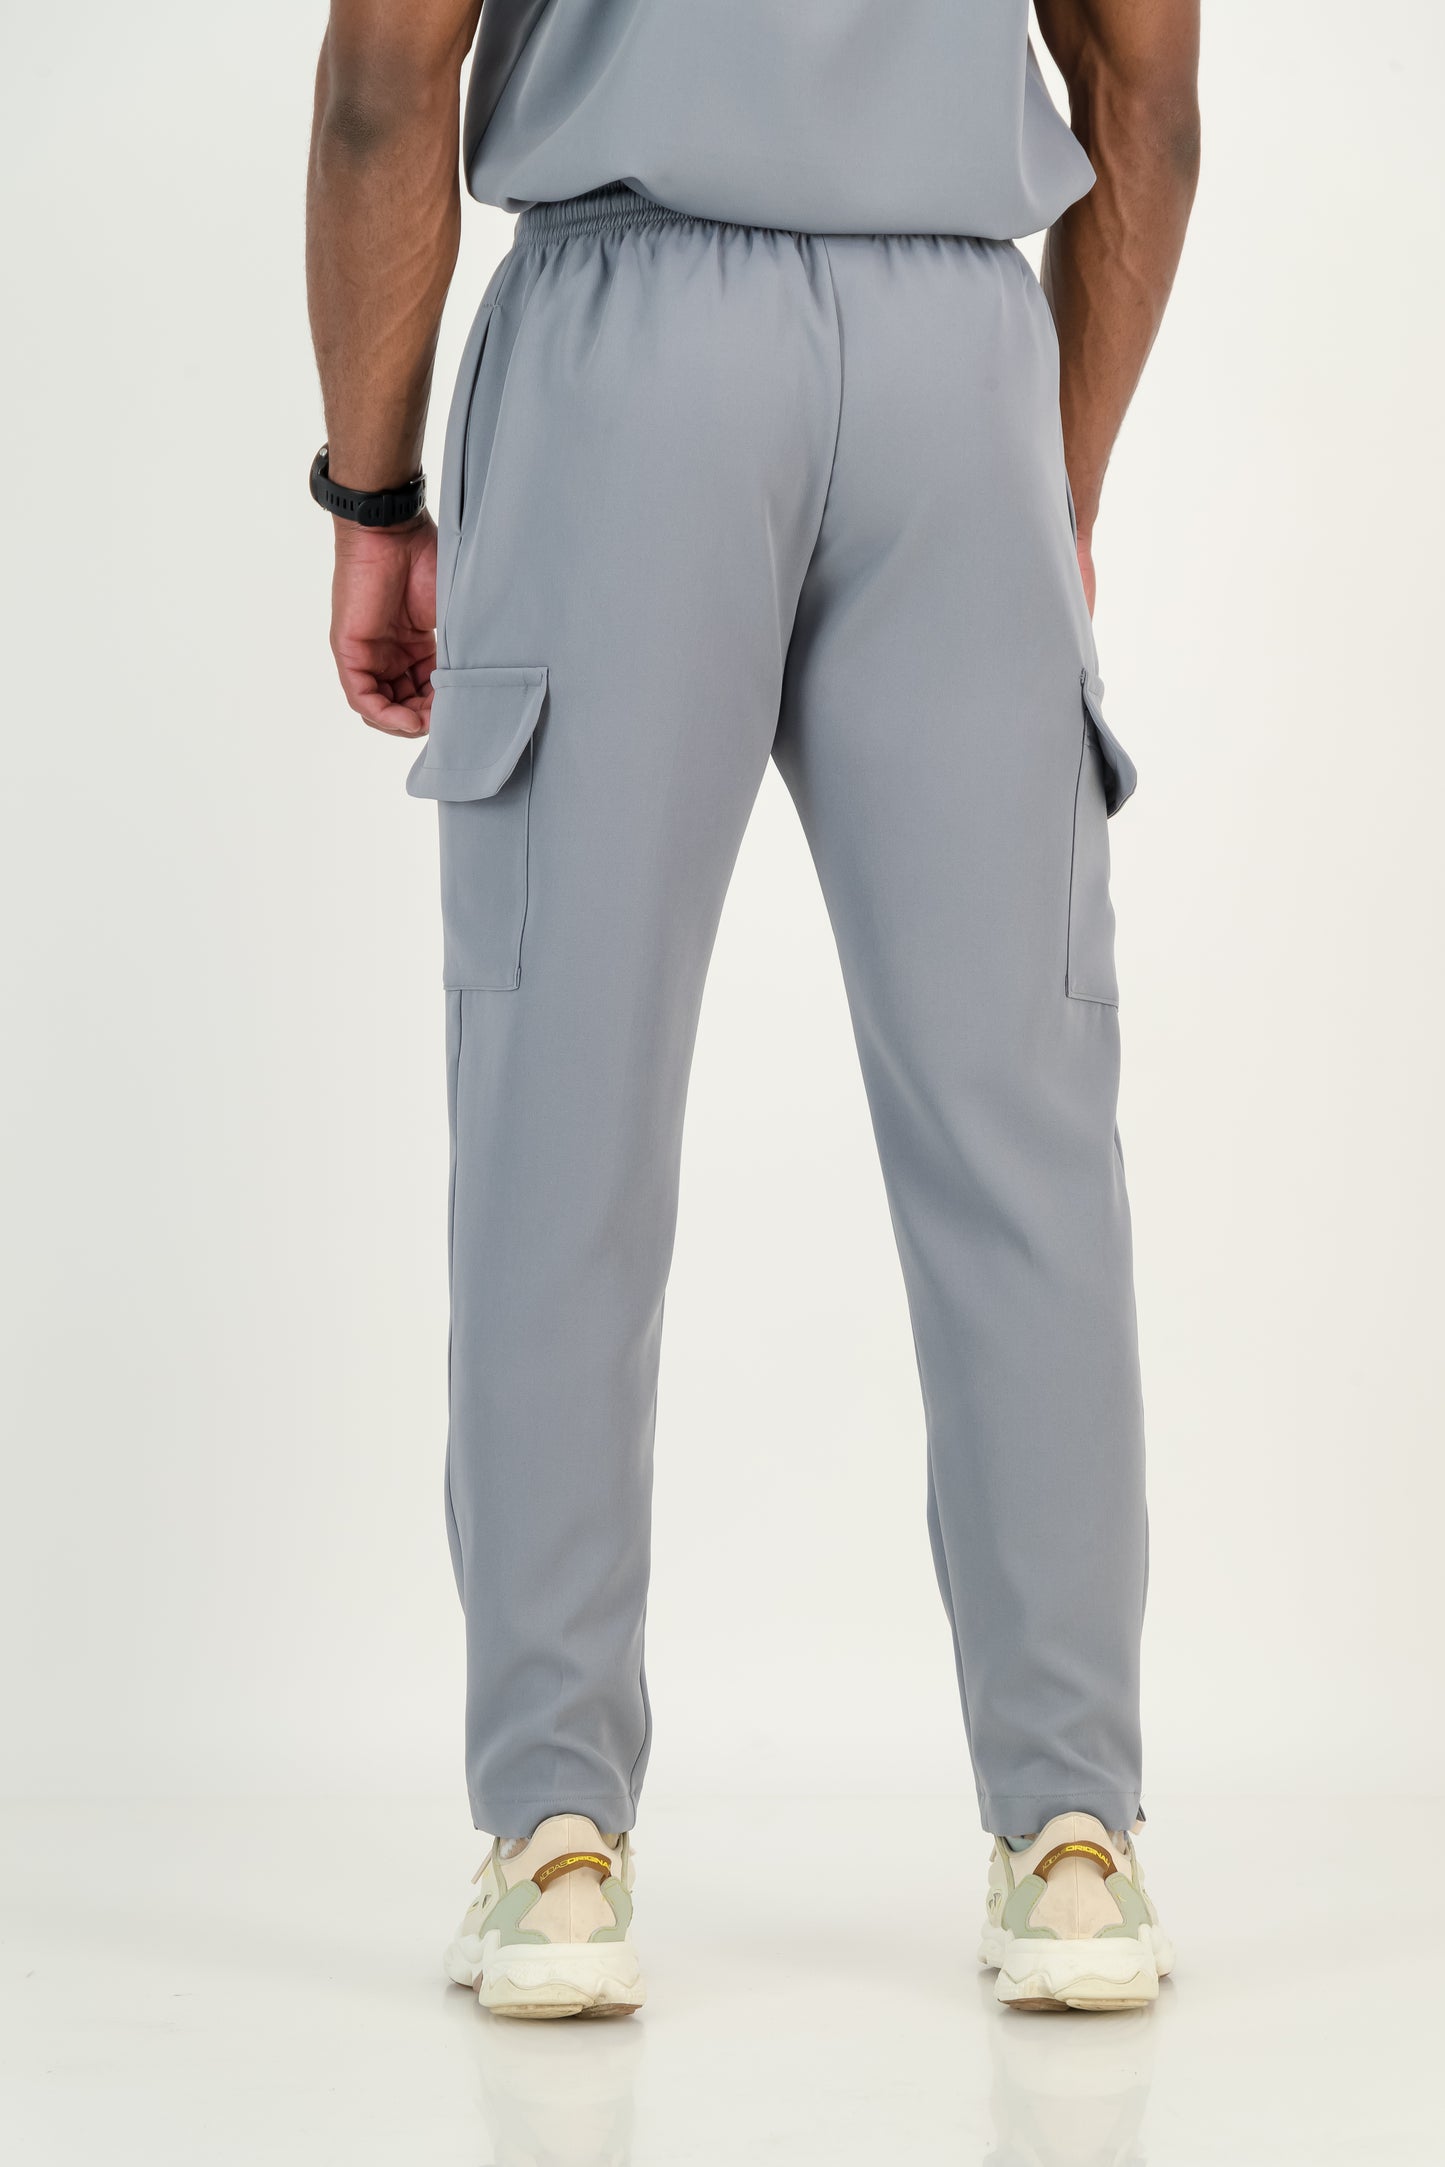 Men's Granite Grey Scrub Pants (NEW FABRIC)